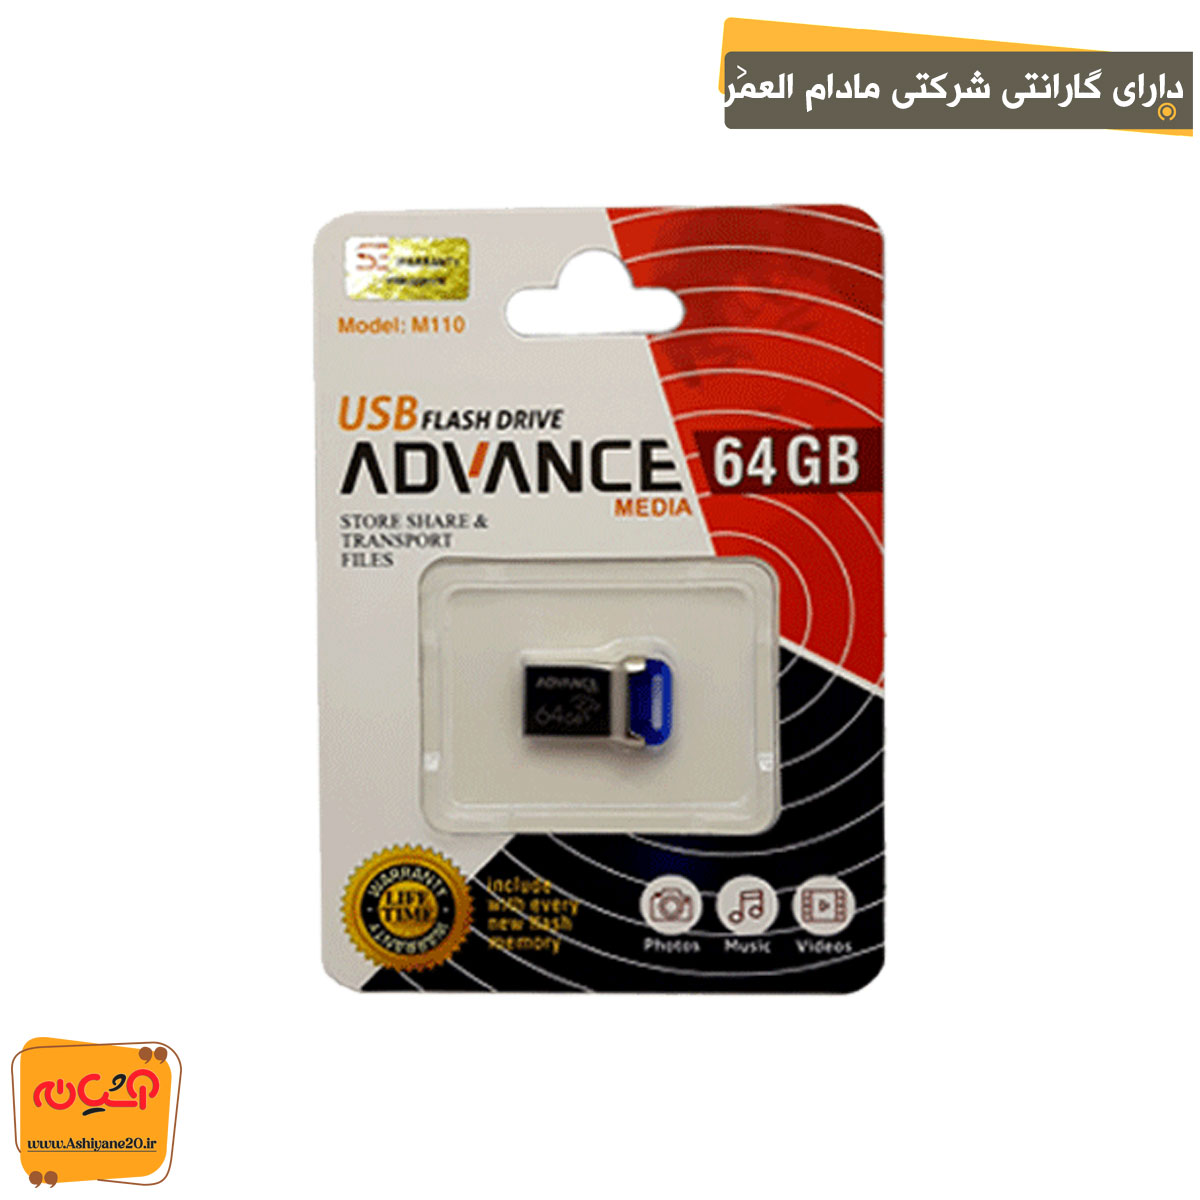 فلش مموری ADVANCE M110 64GB